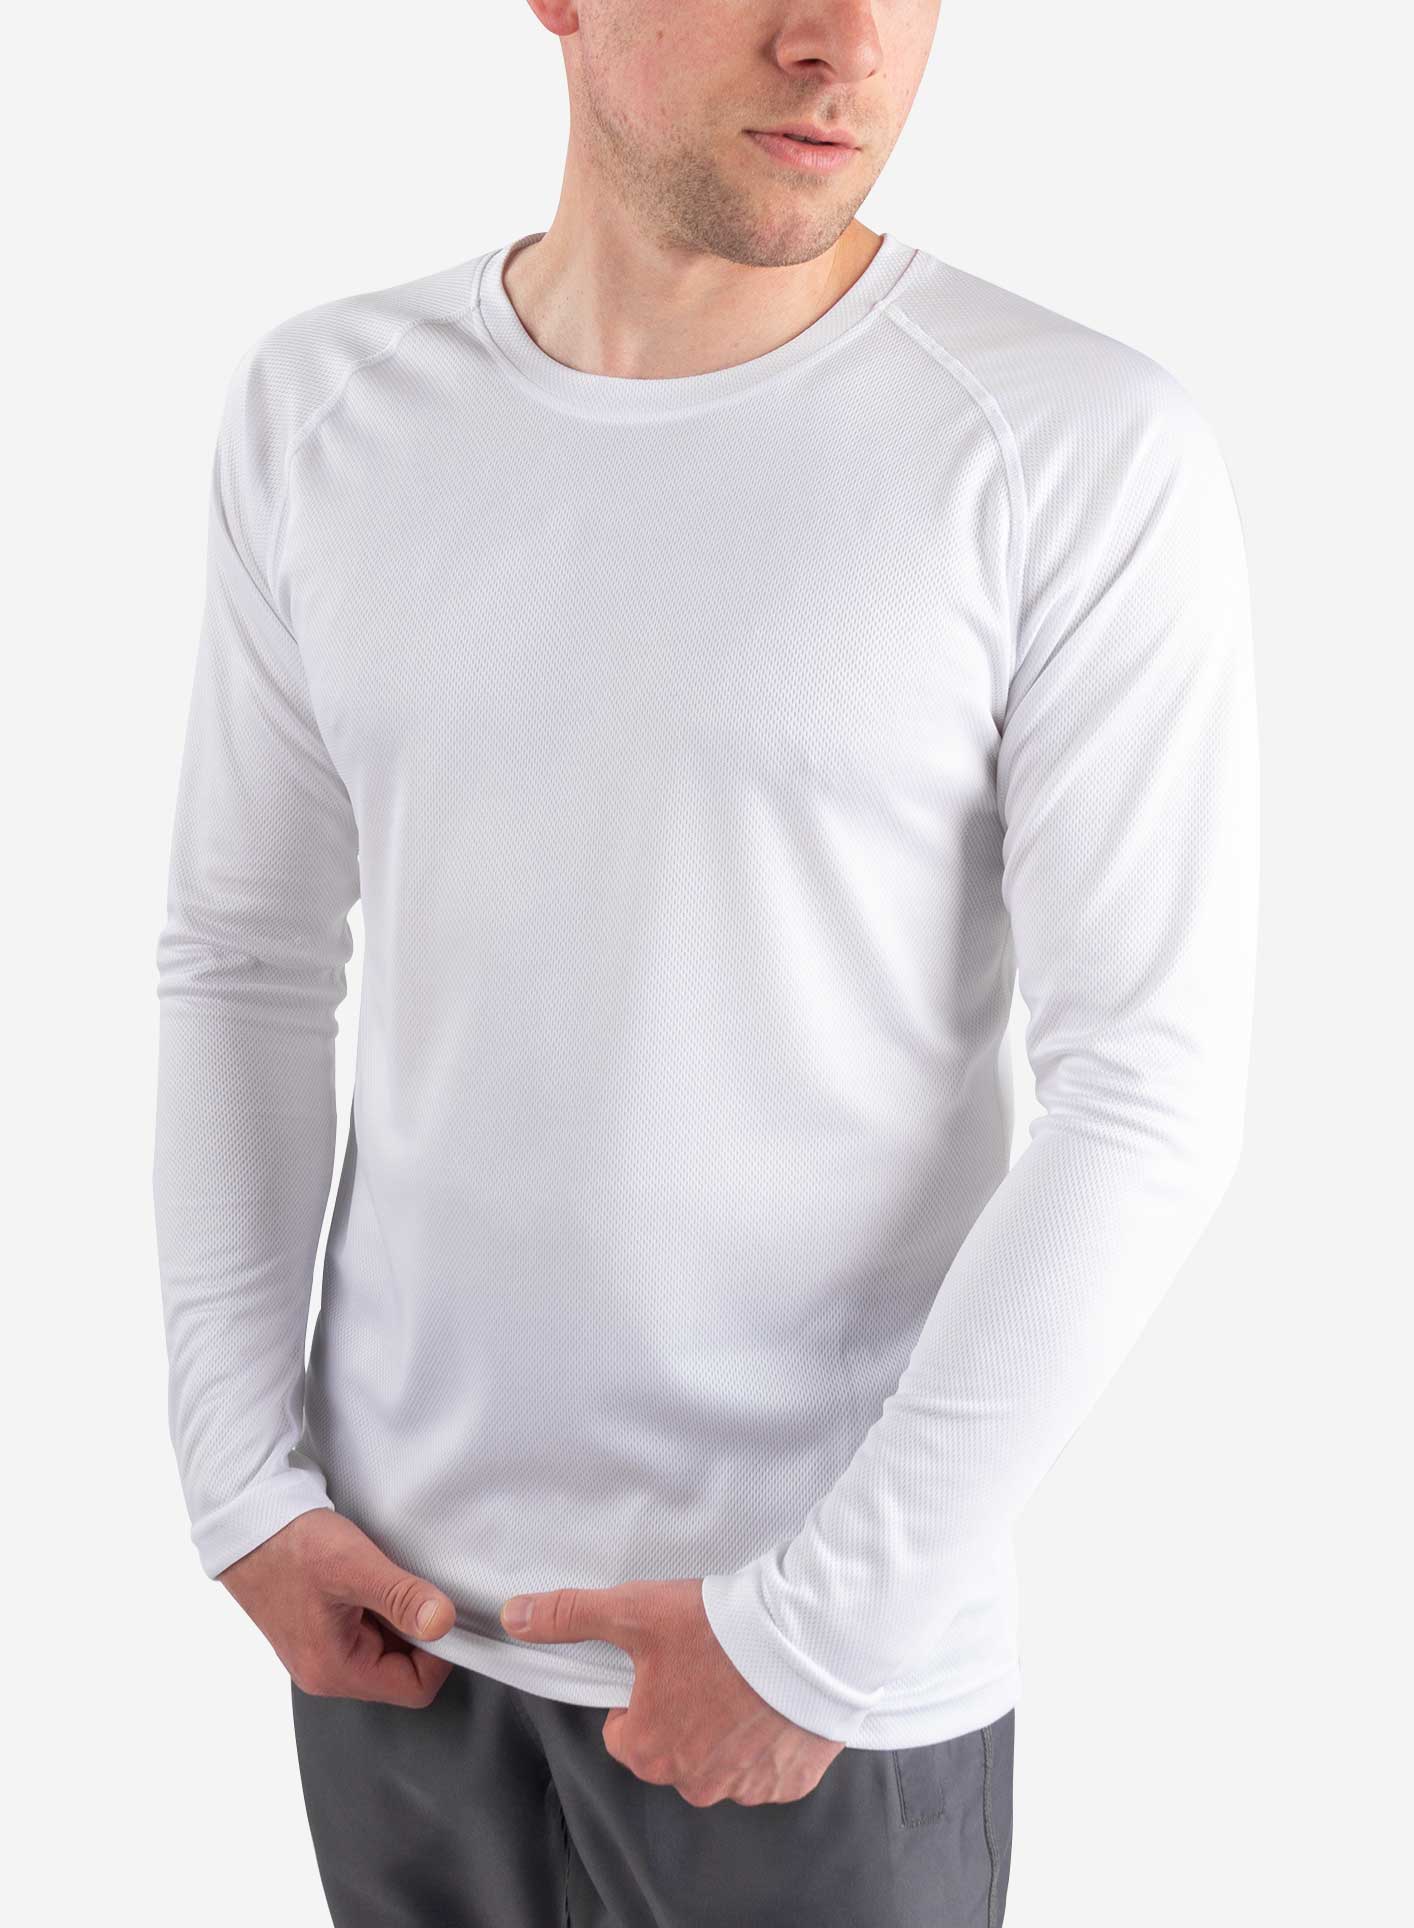 https://tiscrubs.com/cdn/shop/products/mens-scrub-undershirt-long-sleeve-white-front.jpg?v=1689109270&width=1414